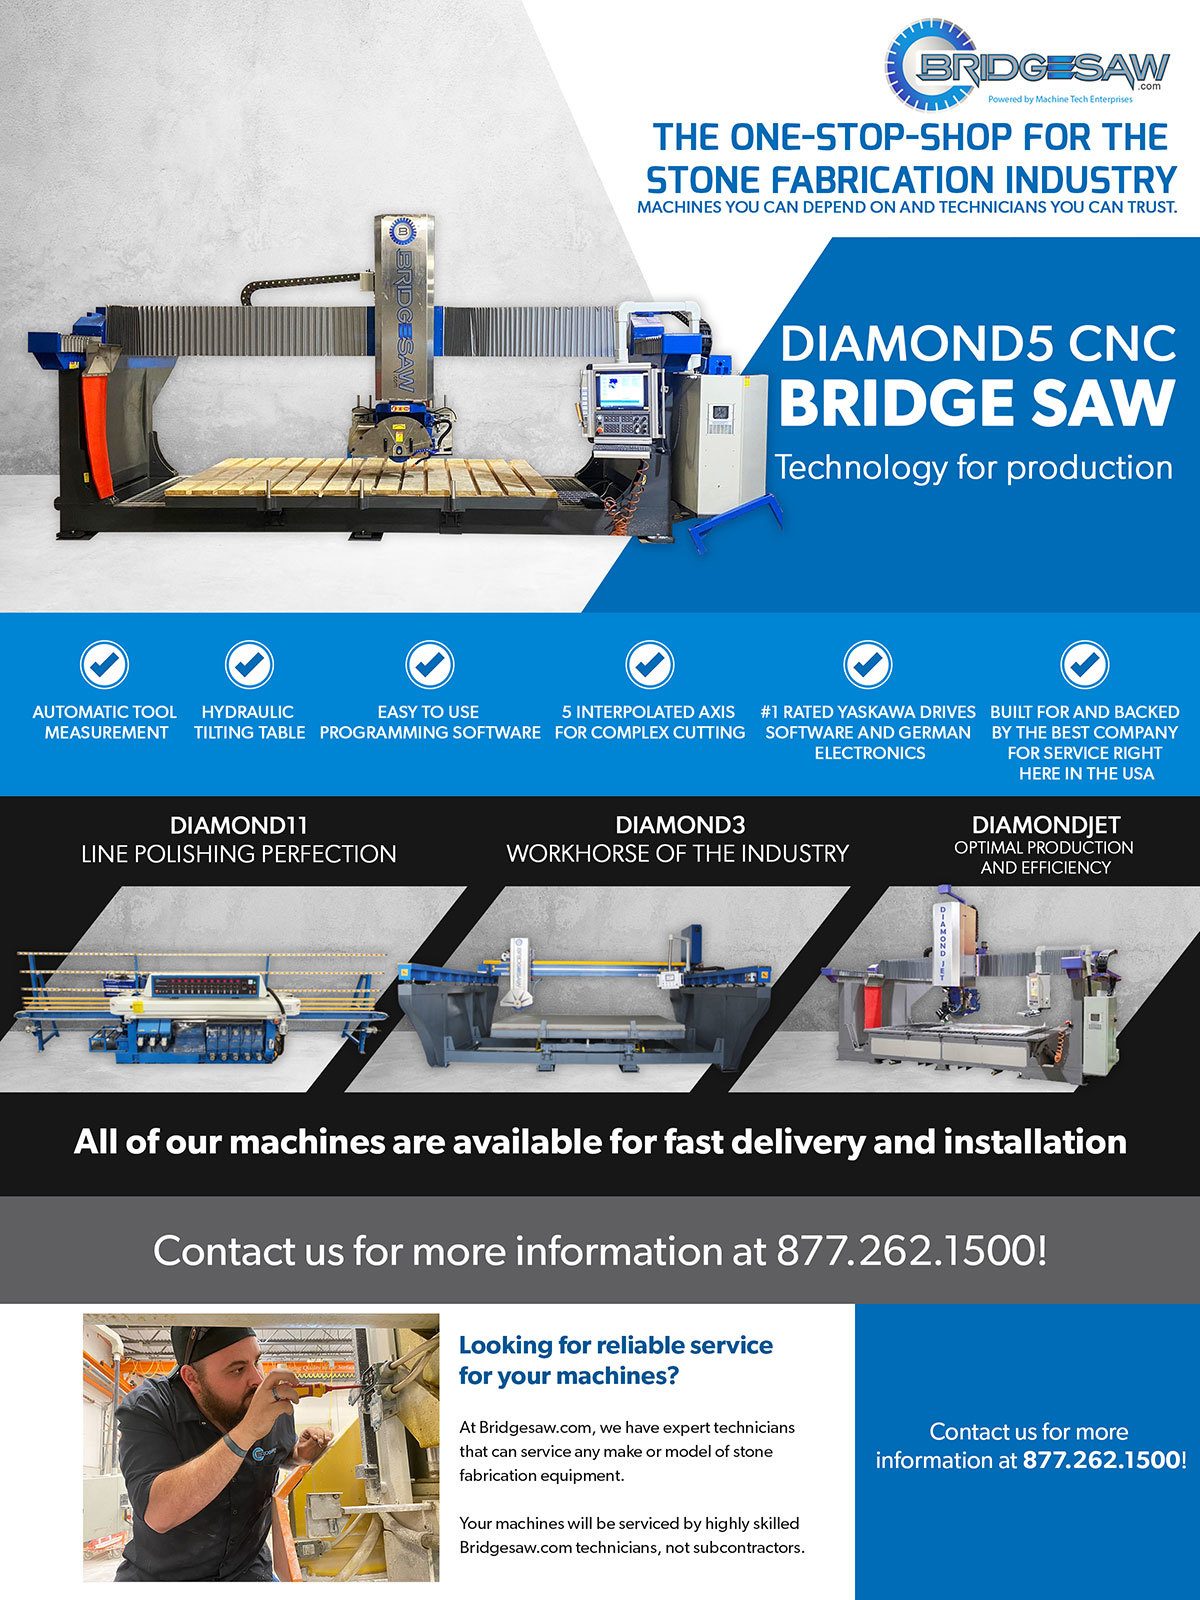 Machine Tech Enterprises LLC, Bridgesaw, Diamond5 CNC, 